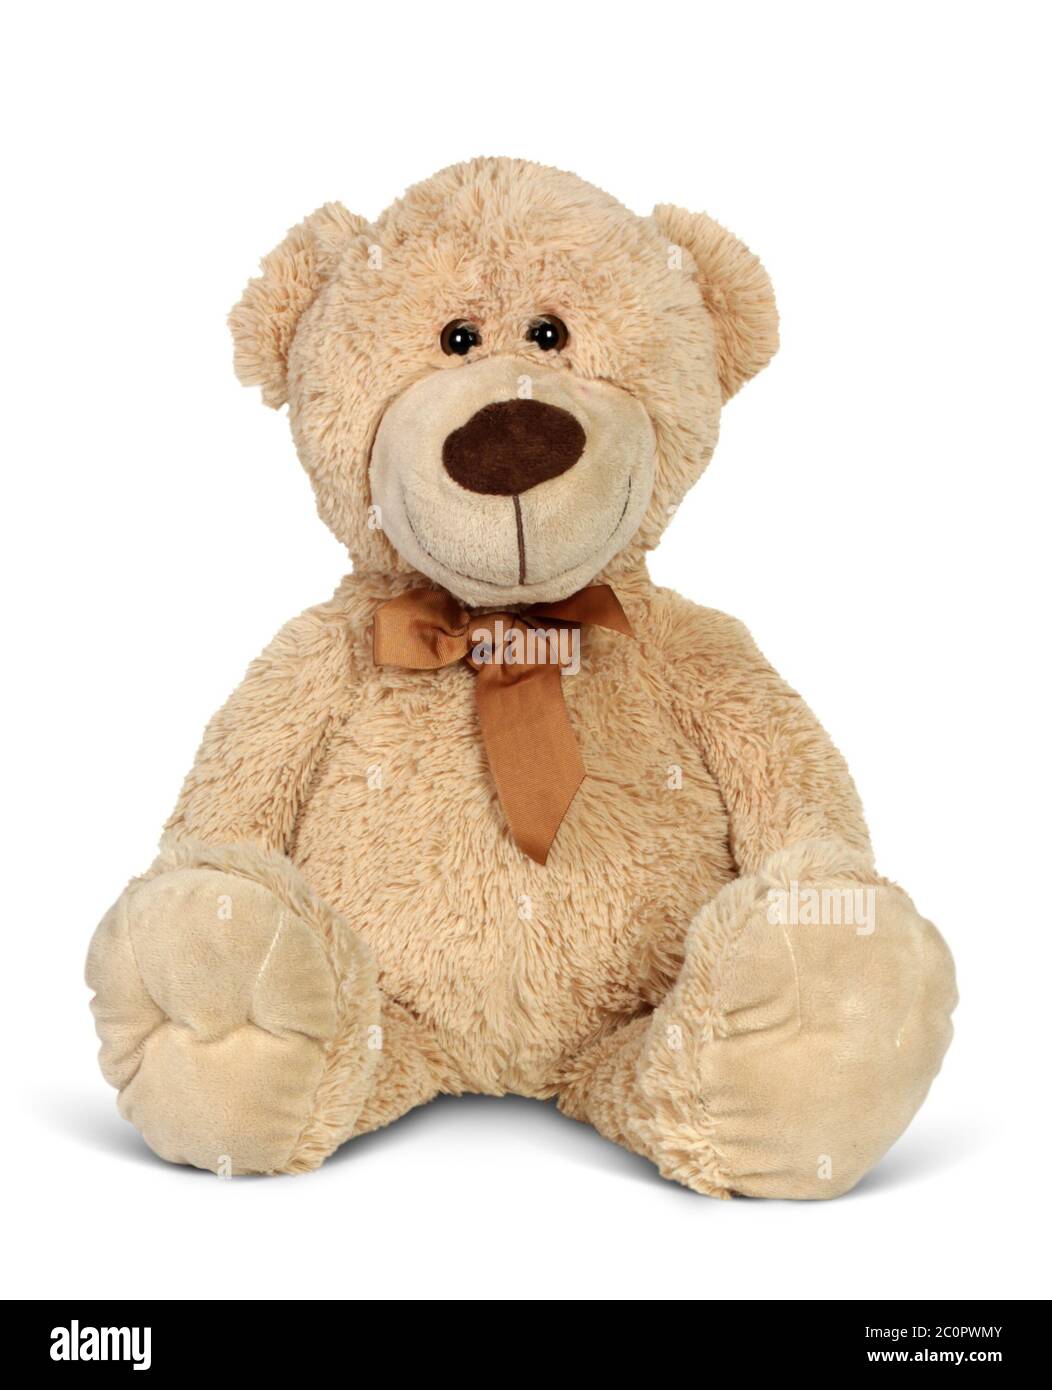 Plush toy bear isolated on white background. Stock Photo